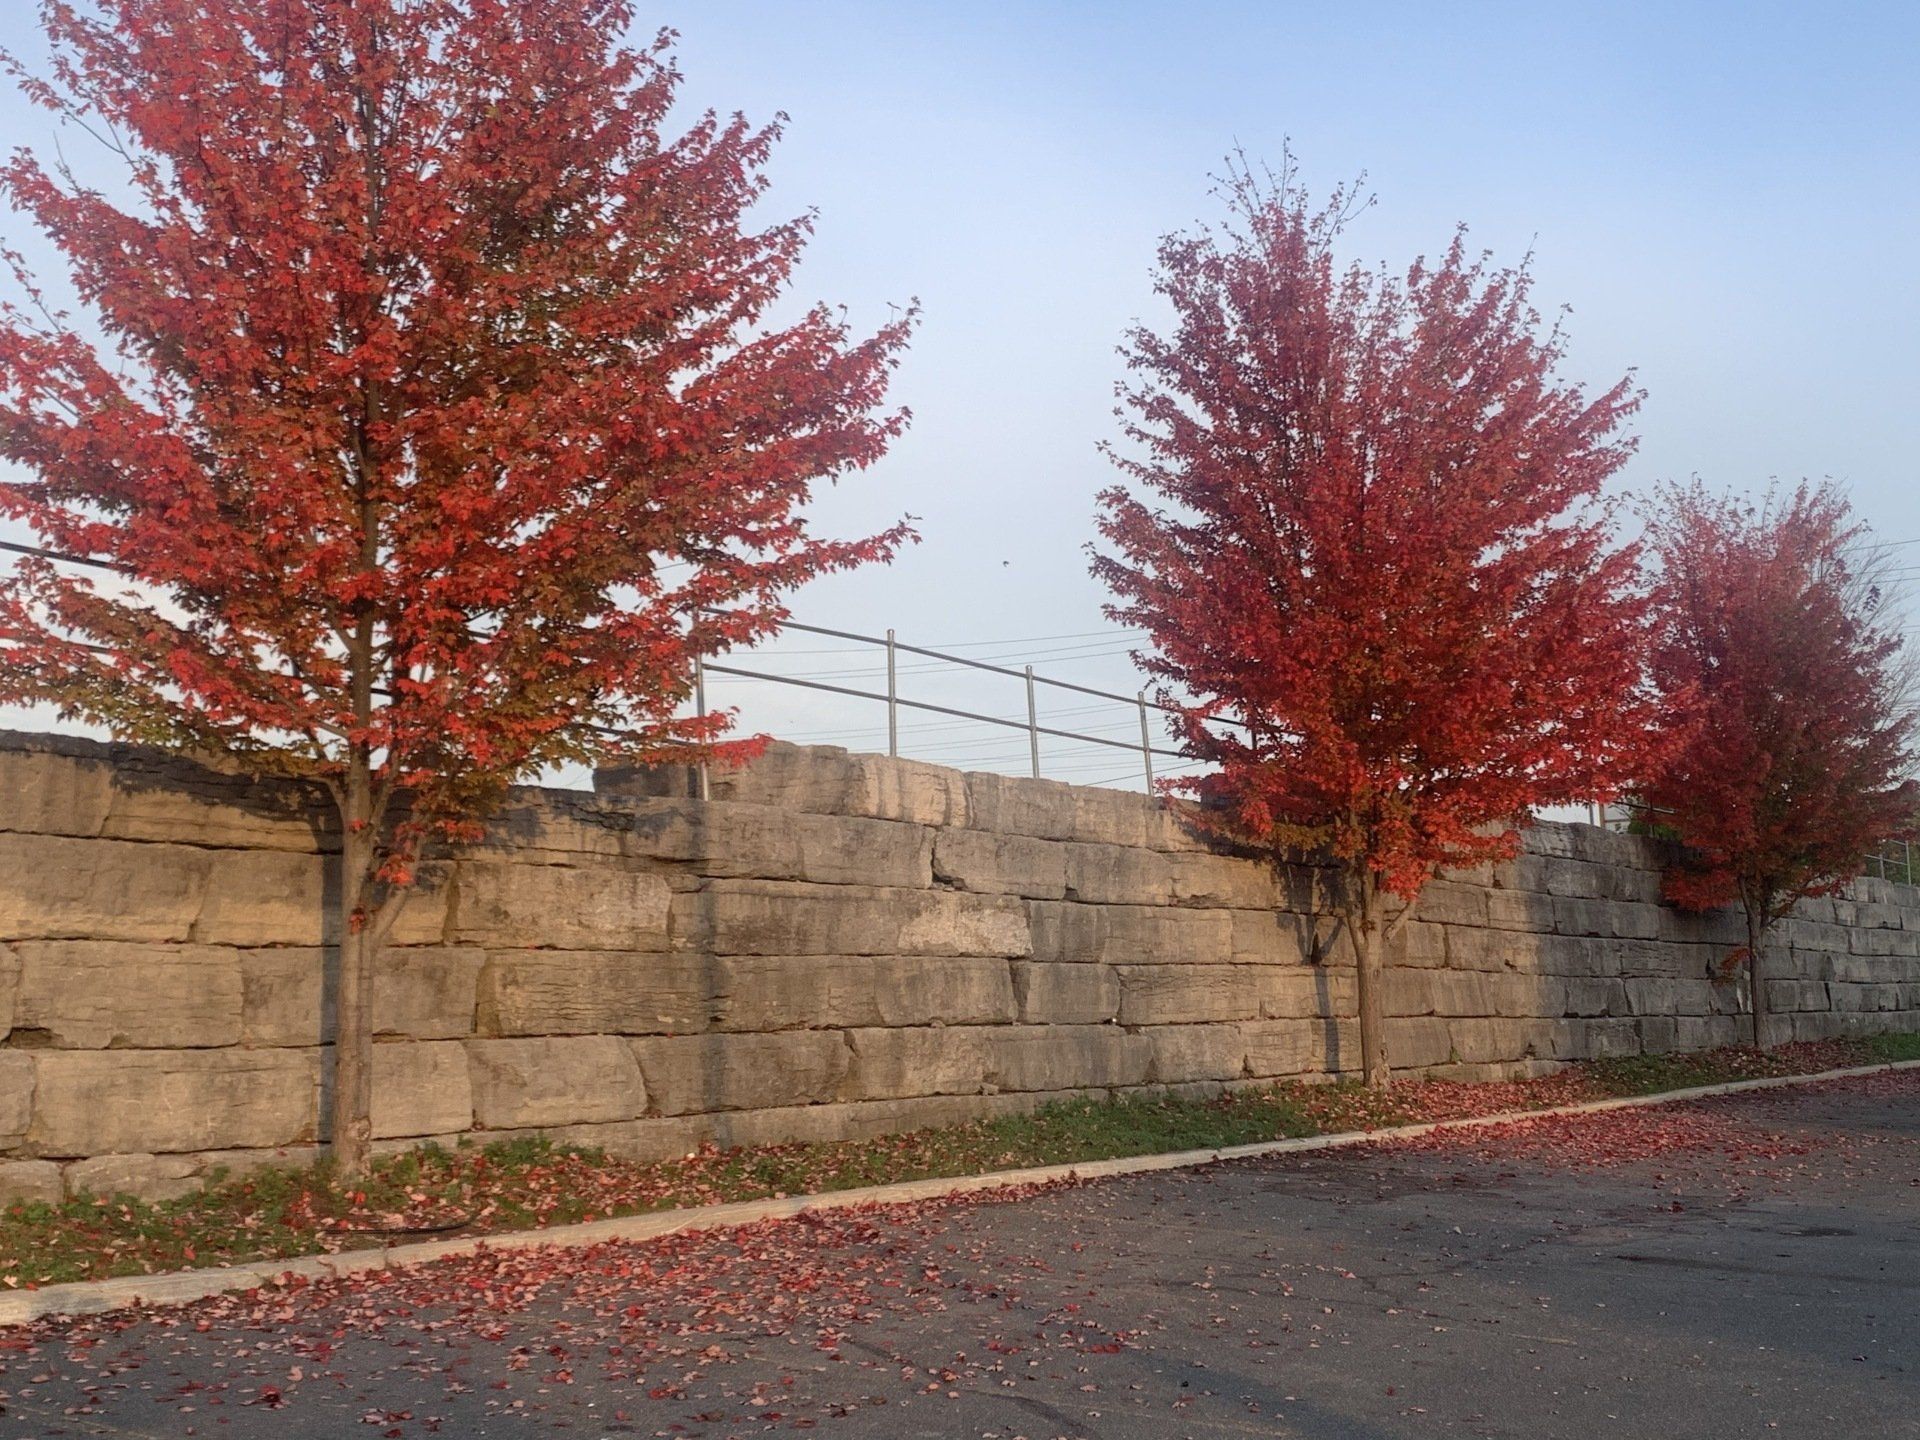 Une rangée d arbres aux feuilles rouges devant un mur de pierre